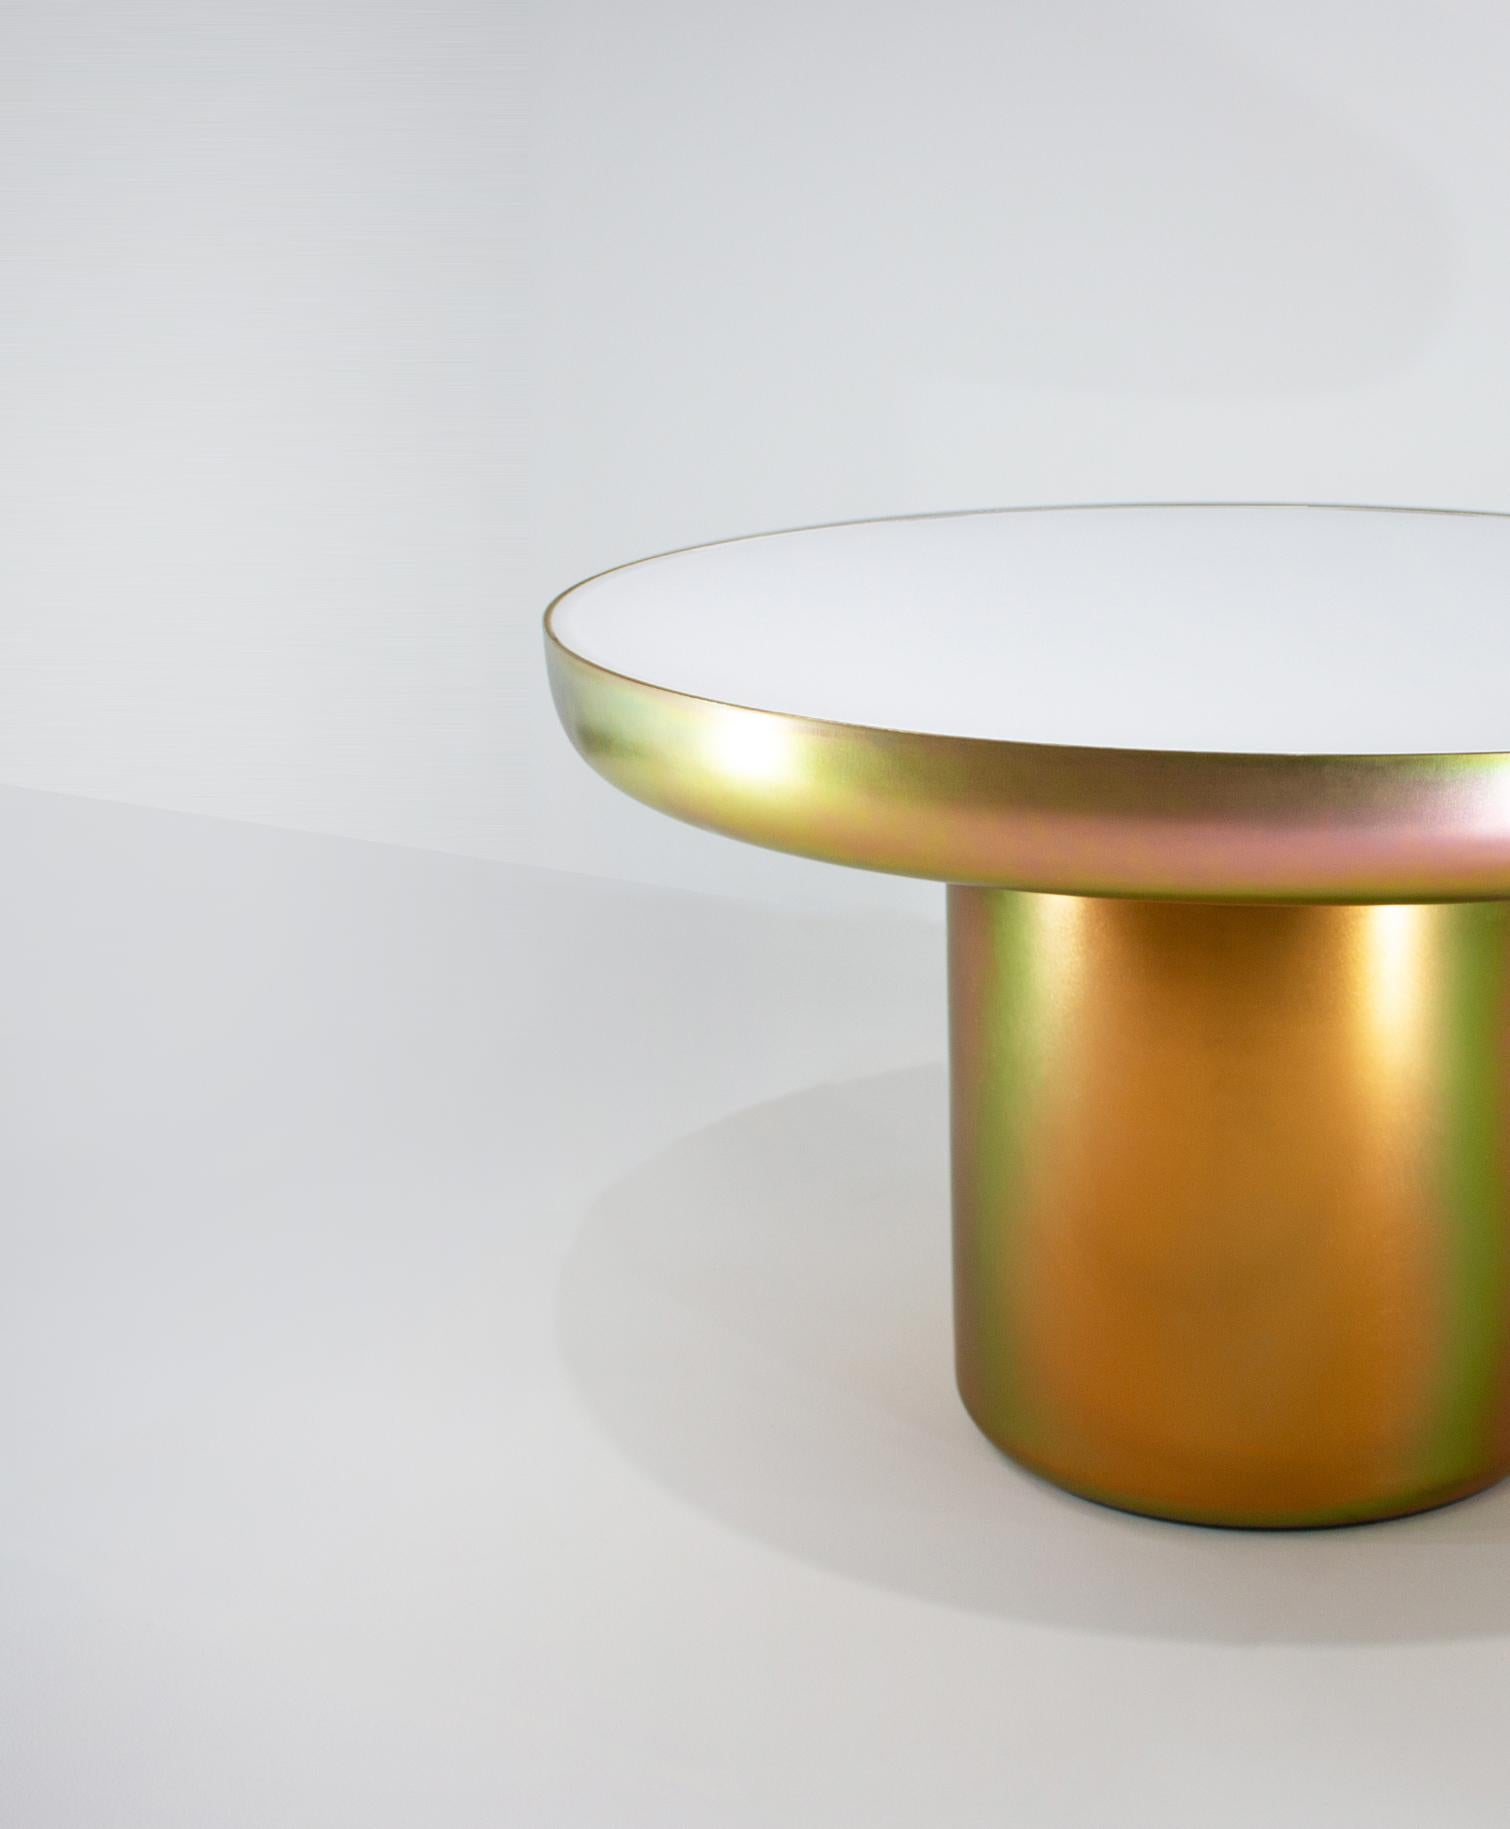 Mood Coffee Zinc ist ein visuell leichter, skulptural starker Tisch mit einer Beschichtung, die die Form hervorhebt und die Farbe feiert. Der Sockel ist mit einer Zinkbeschichtung versehen, die es dem Stück ermöglicht, die Farben und Töne seiner